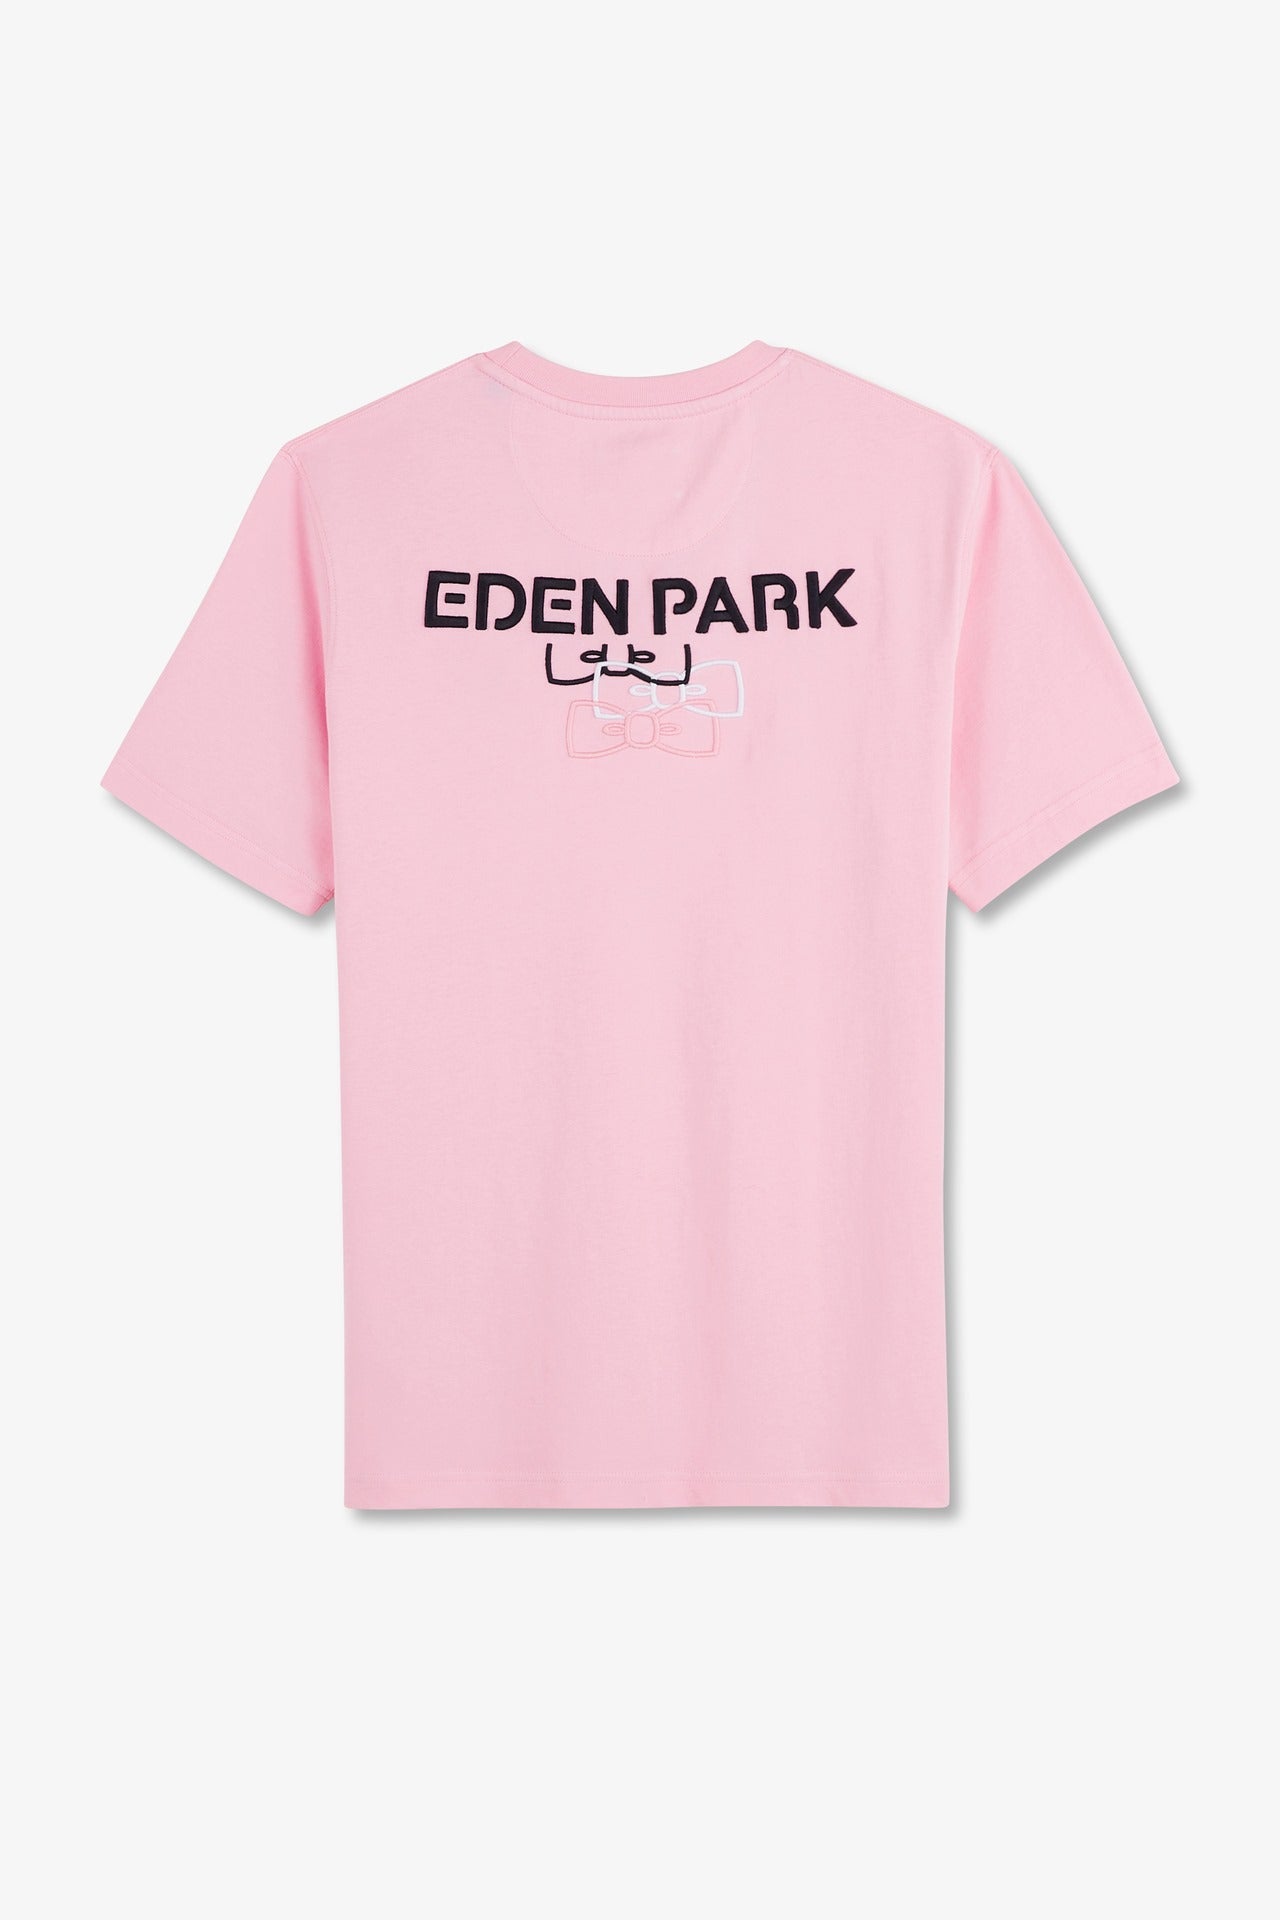 T-shirt manches courtes rose en coton emblème dos